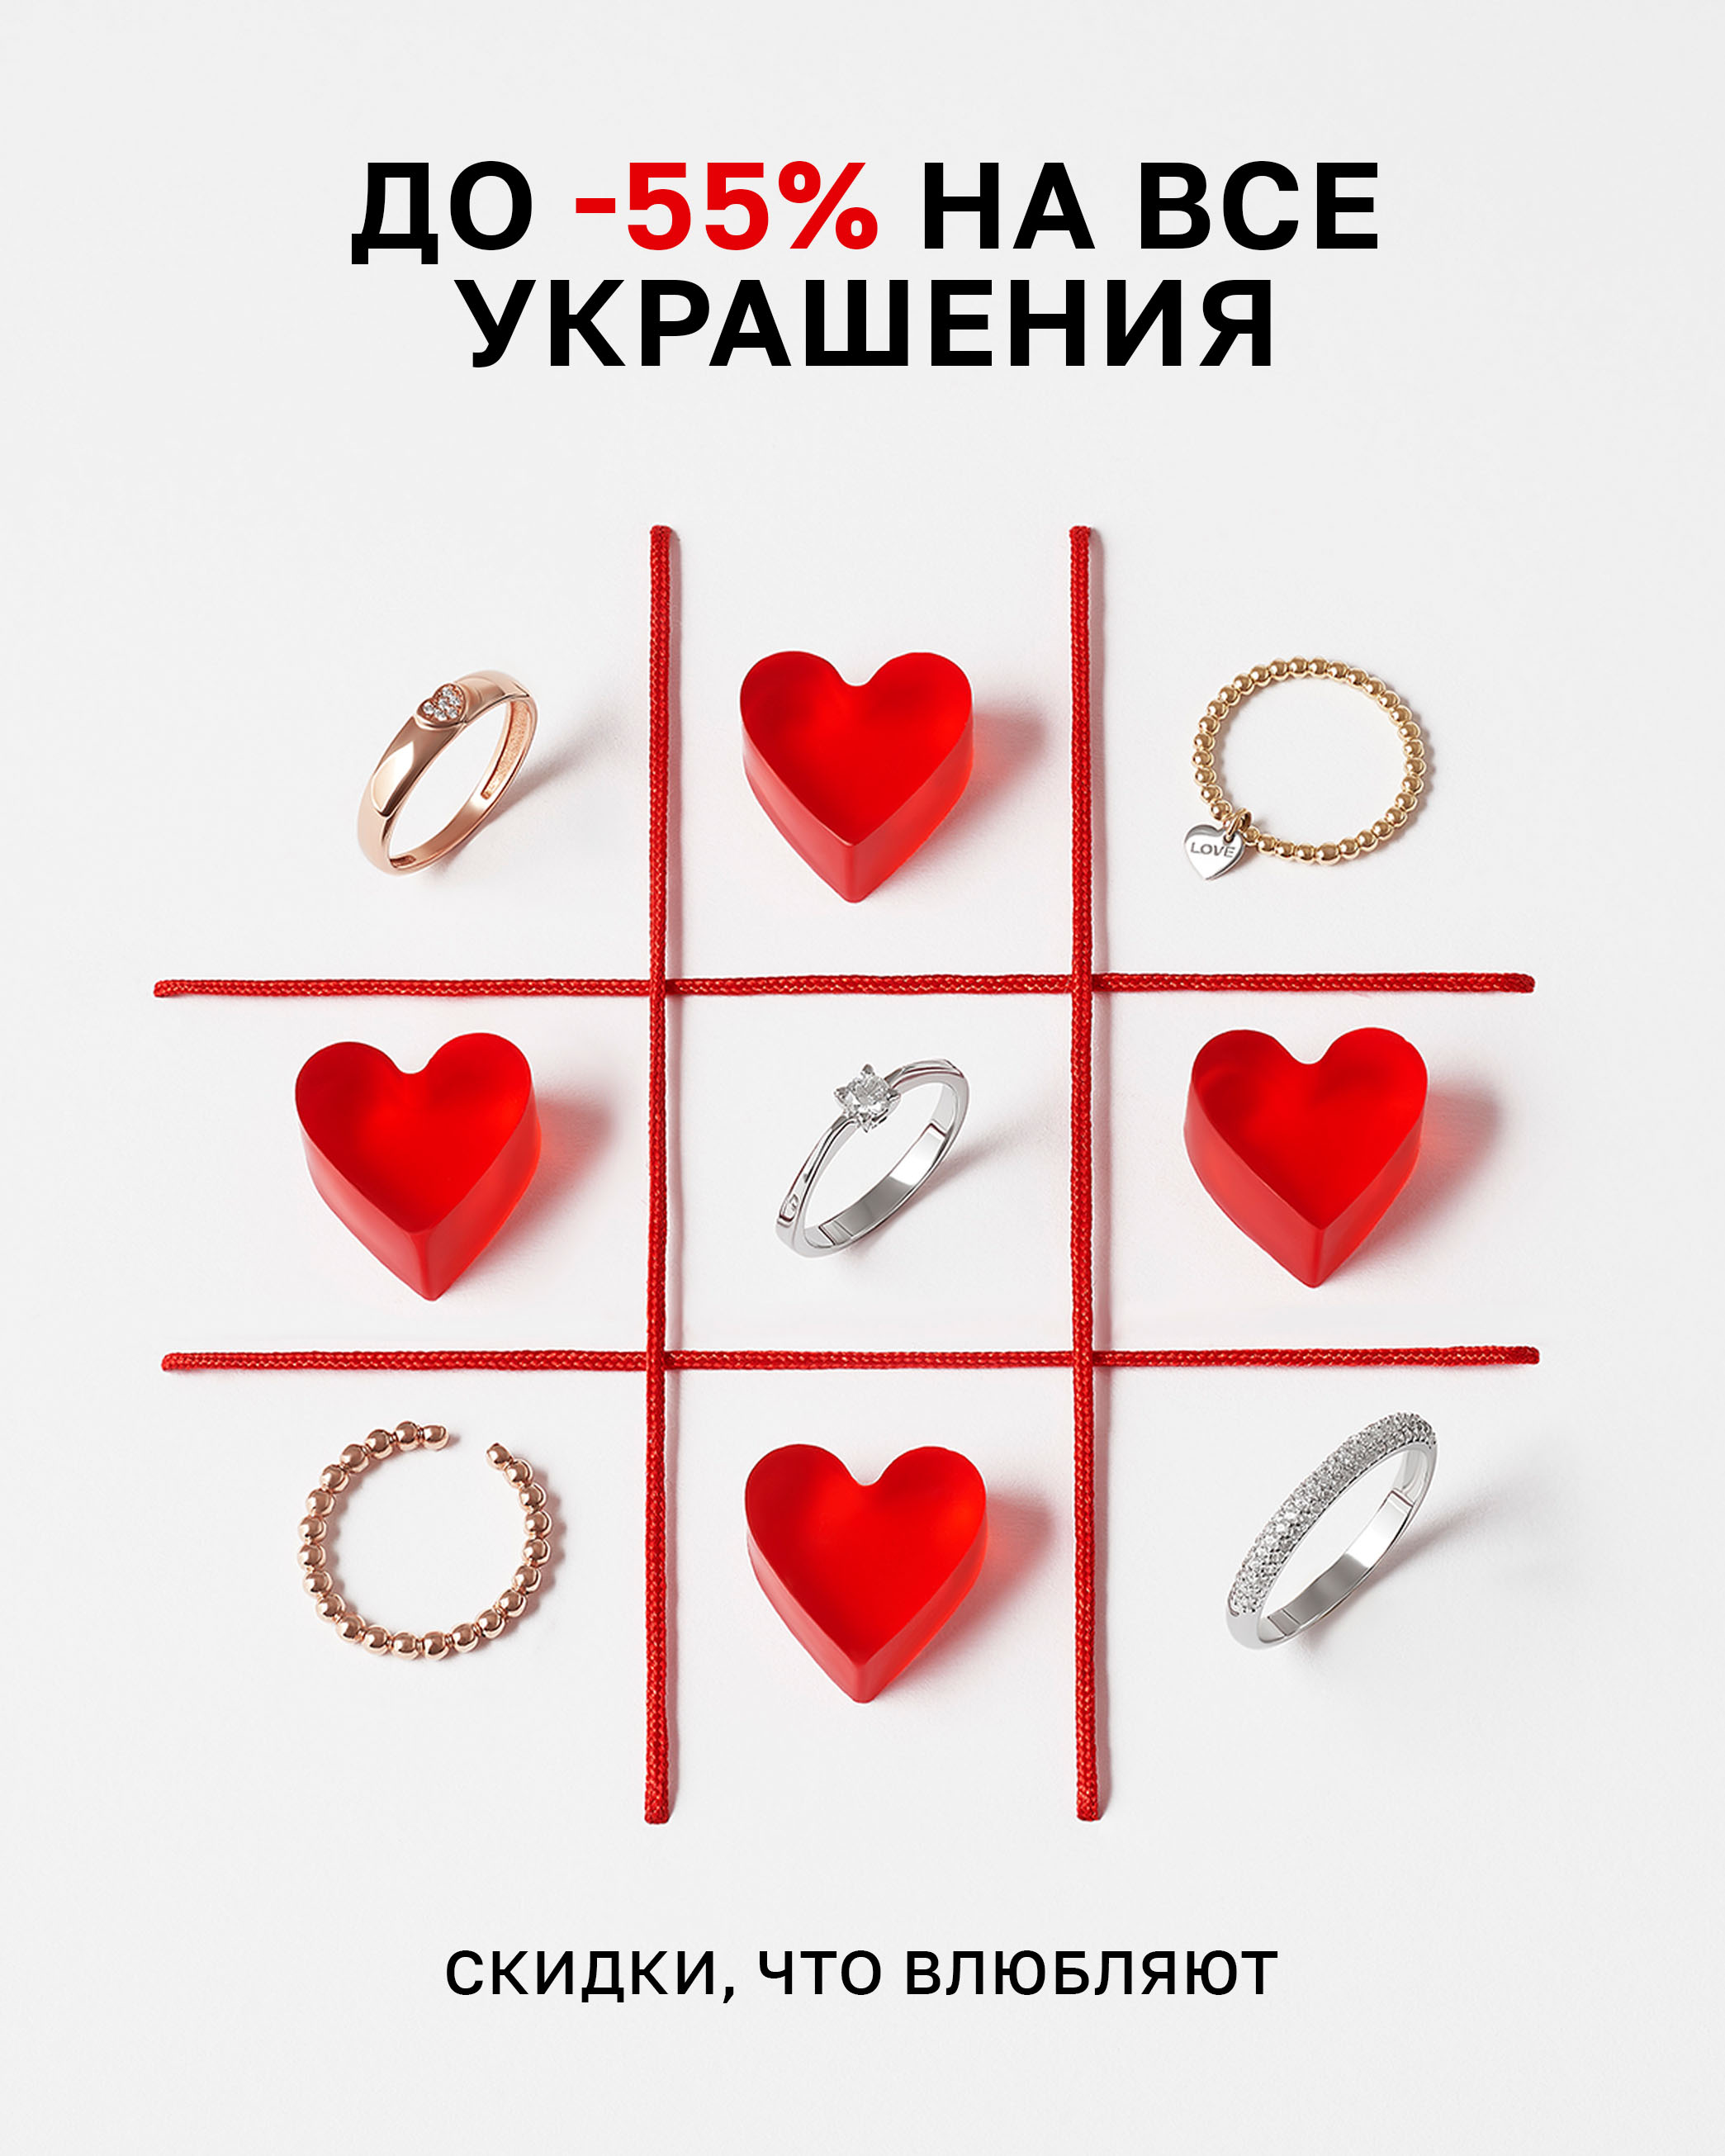 Интернет-магазин ювелирных украшений MIE | Купить украшения из серебра в Москве и СПб, на сайте